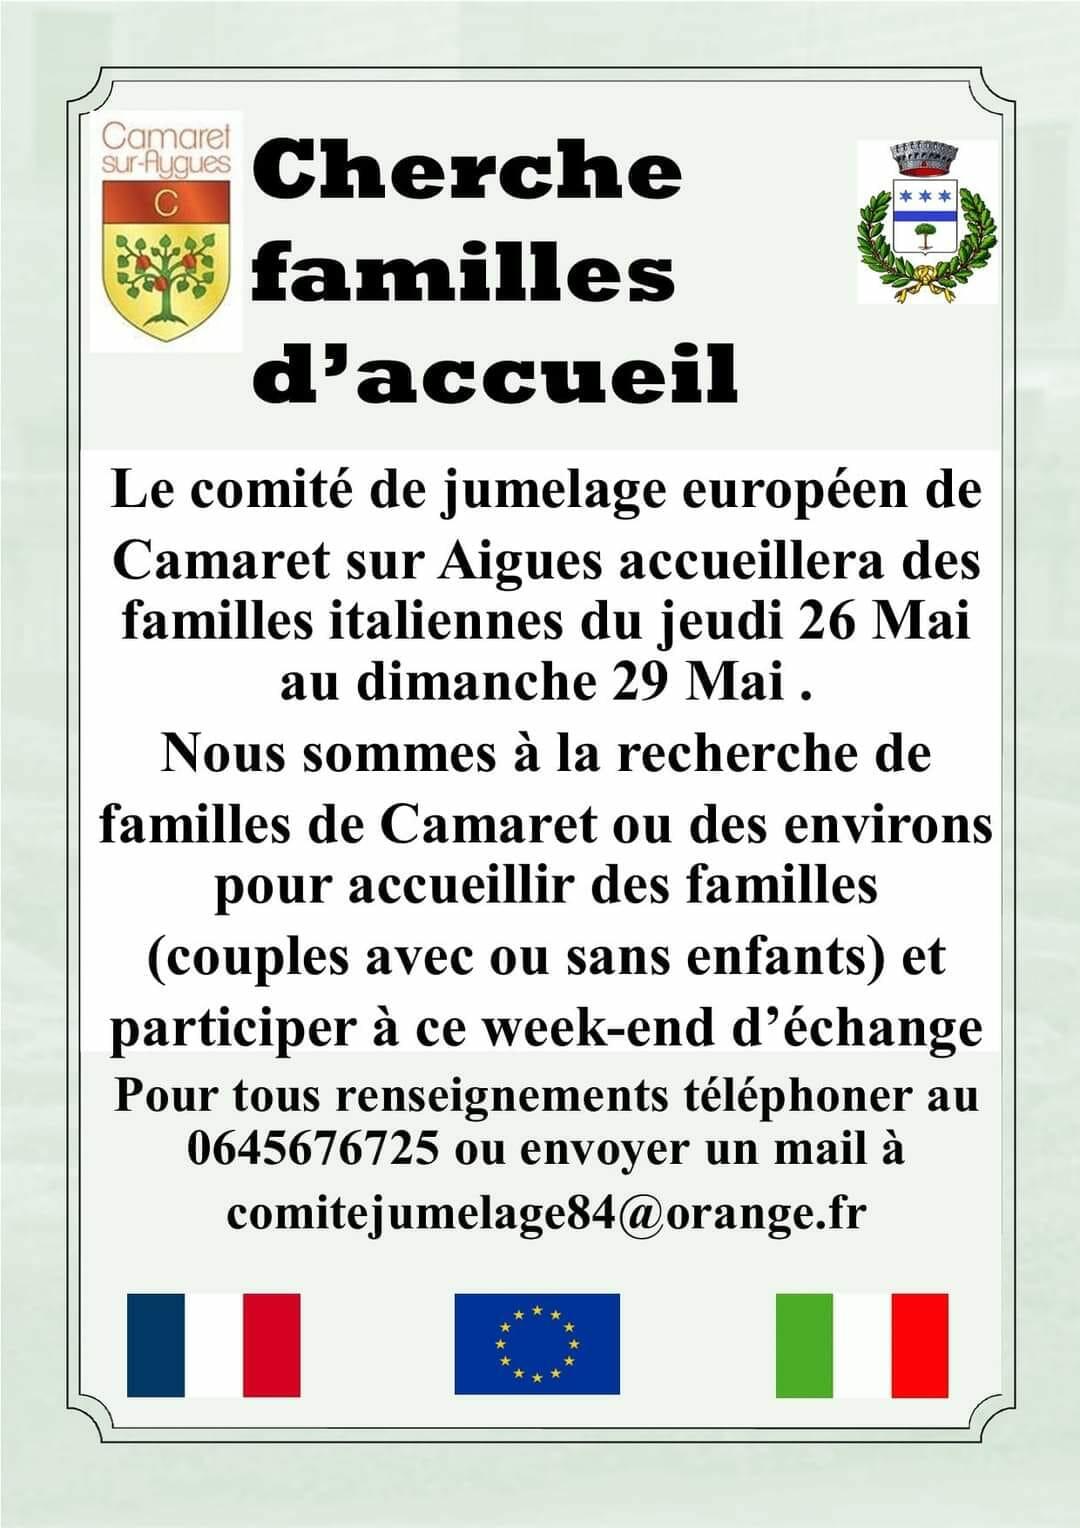 Message du Comité de jumelage européen de Camaret